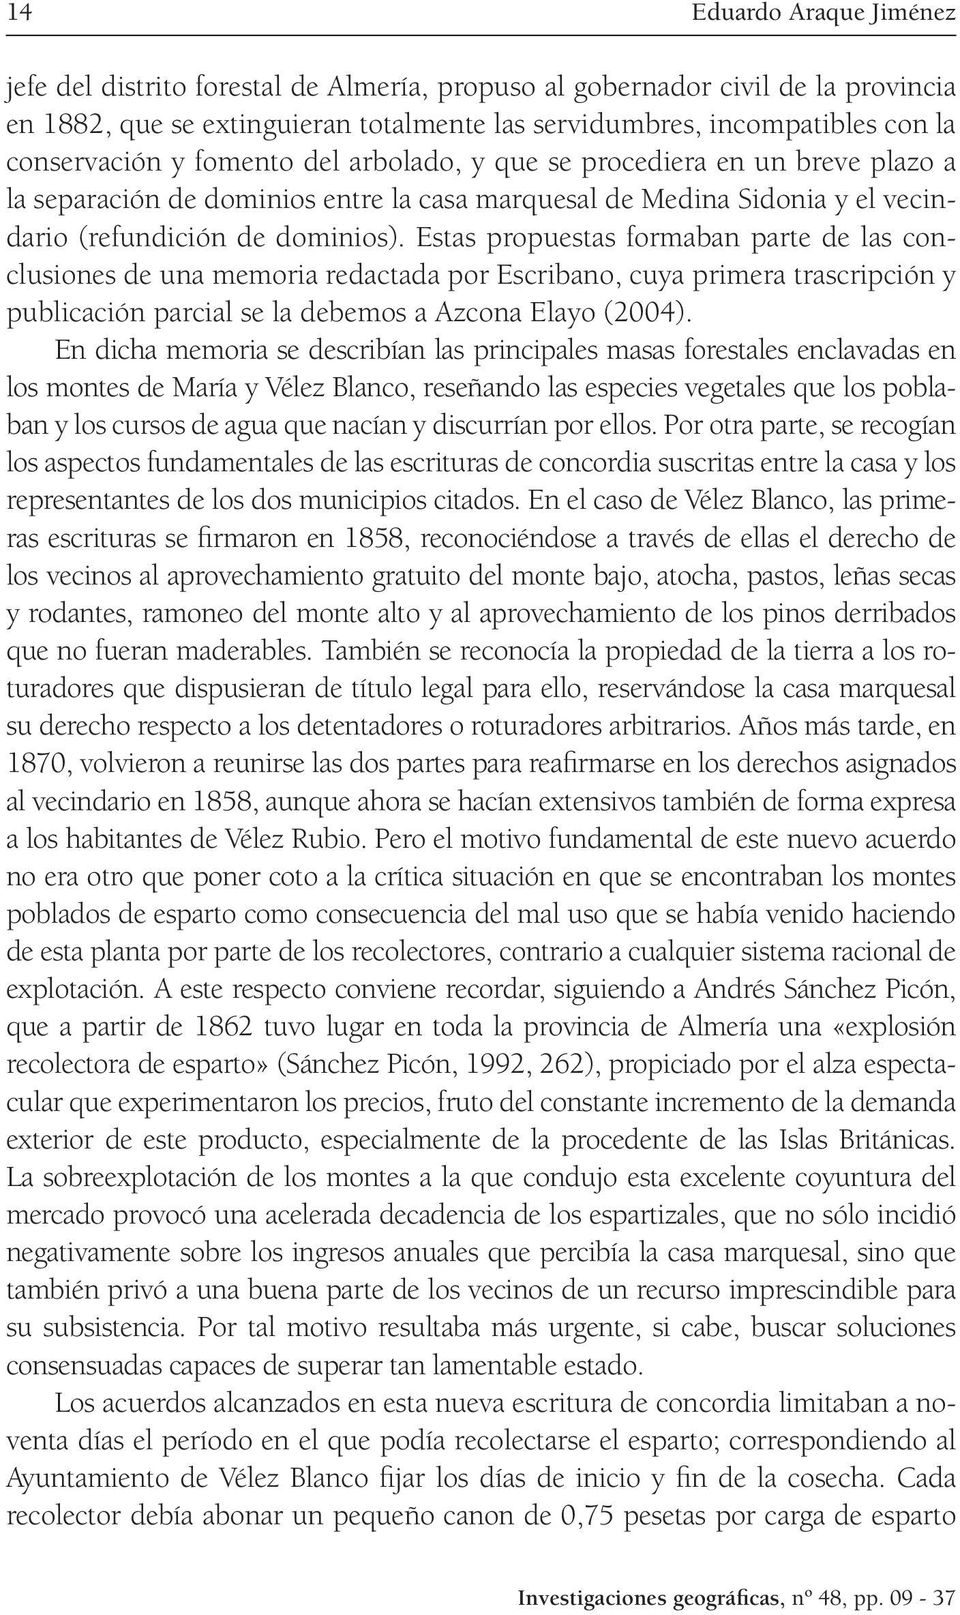 Estas propuestas formaban parte de las conclusiones de una memoria redactada por Escribano, cuya primera trascripción y publicación parcial se la debemos a Azcona Elayo (2004).